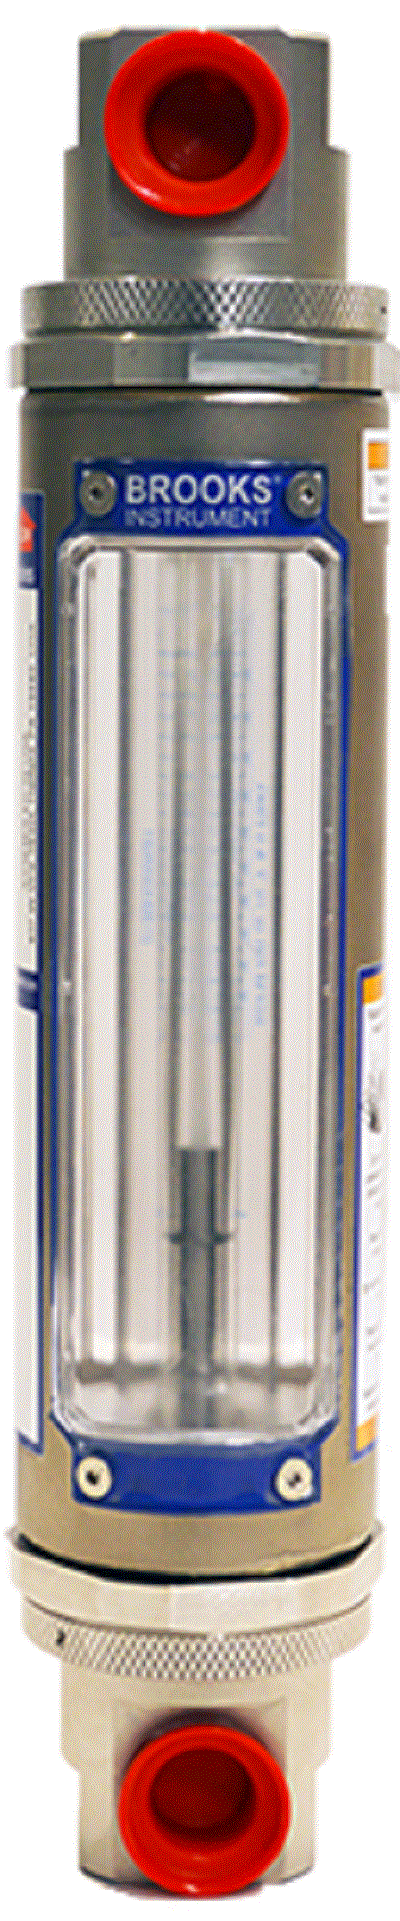 Ротаметр стеклянный для измерения расхода жидкости и газа BROOKS GT1300 Расходомеры